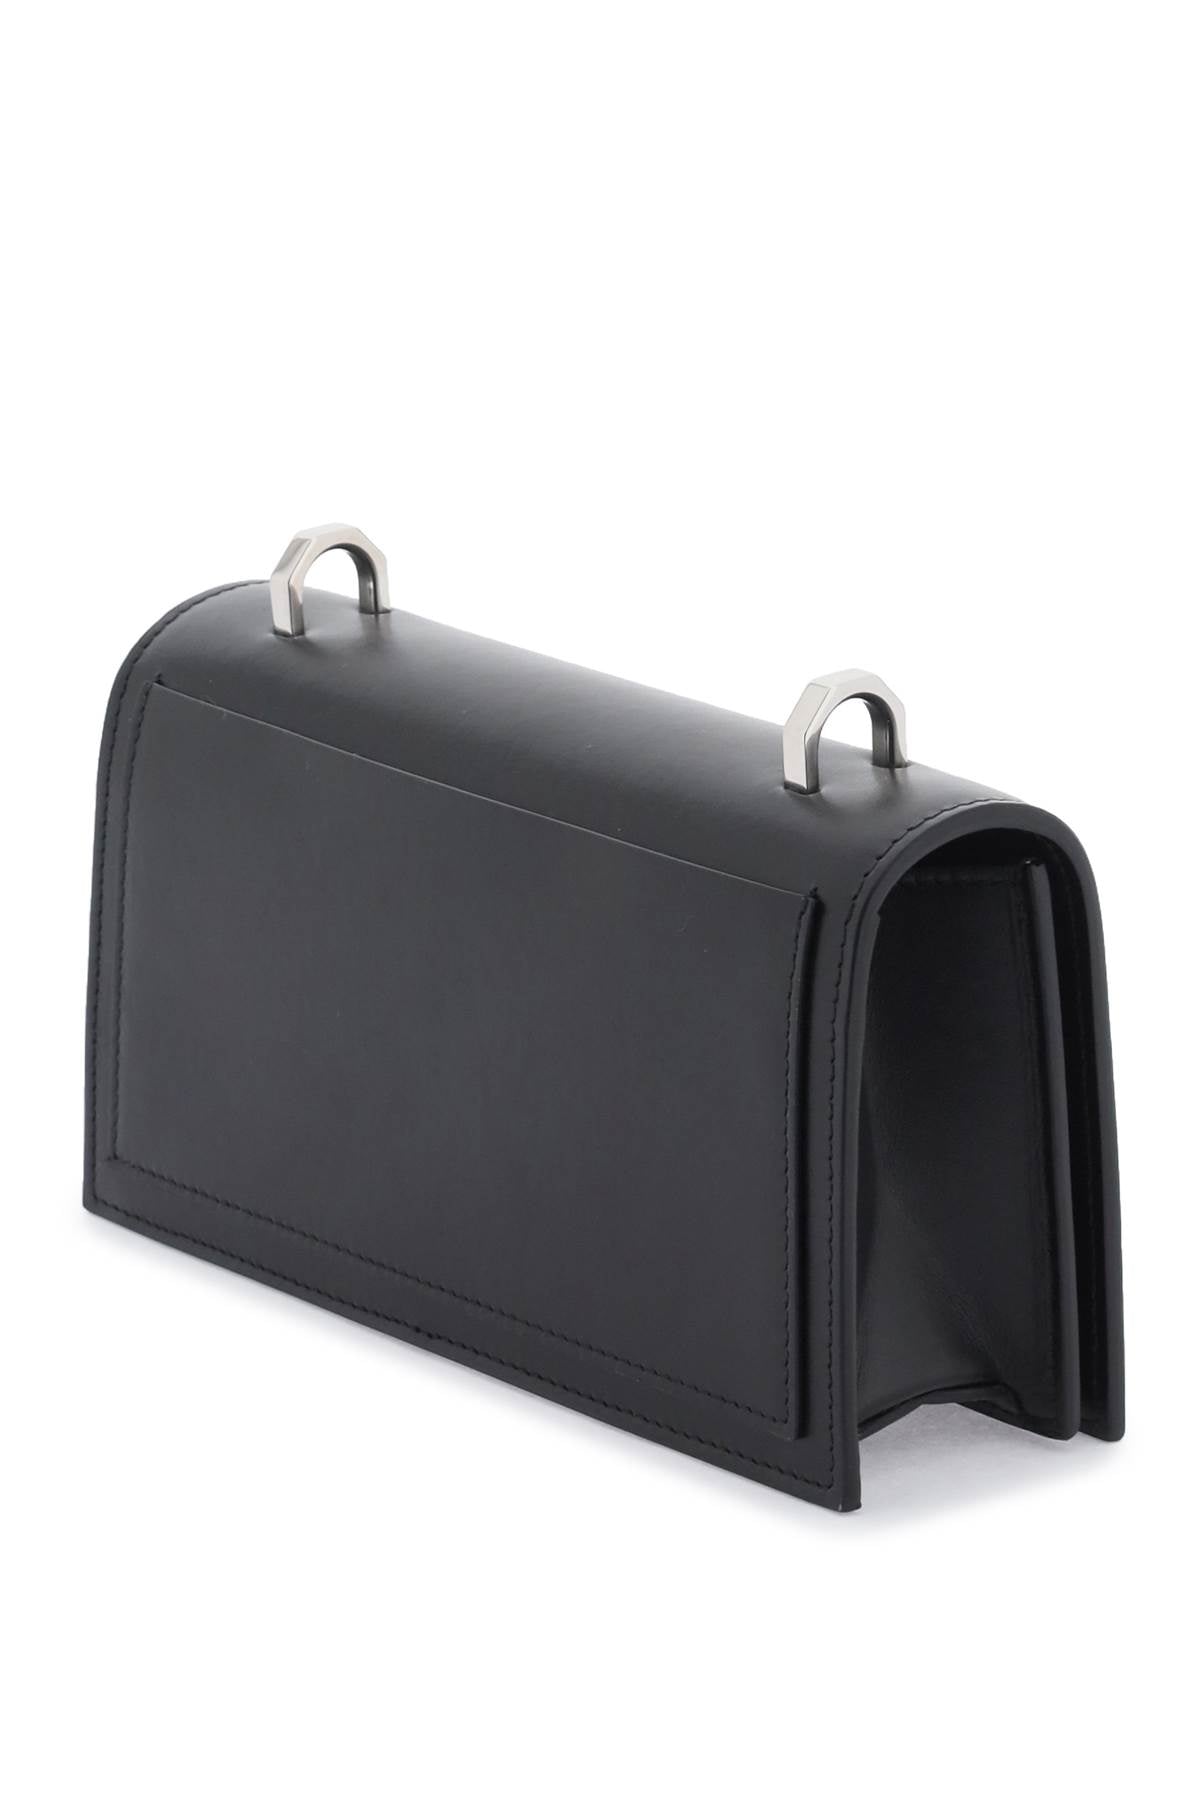 ALEXANDER MCQUEEN Men's Black Knuckle Satchel Leather Handbag for FW23